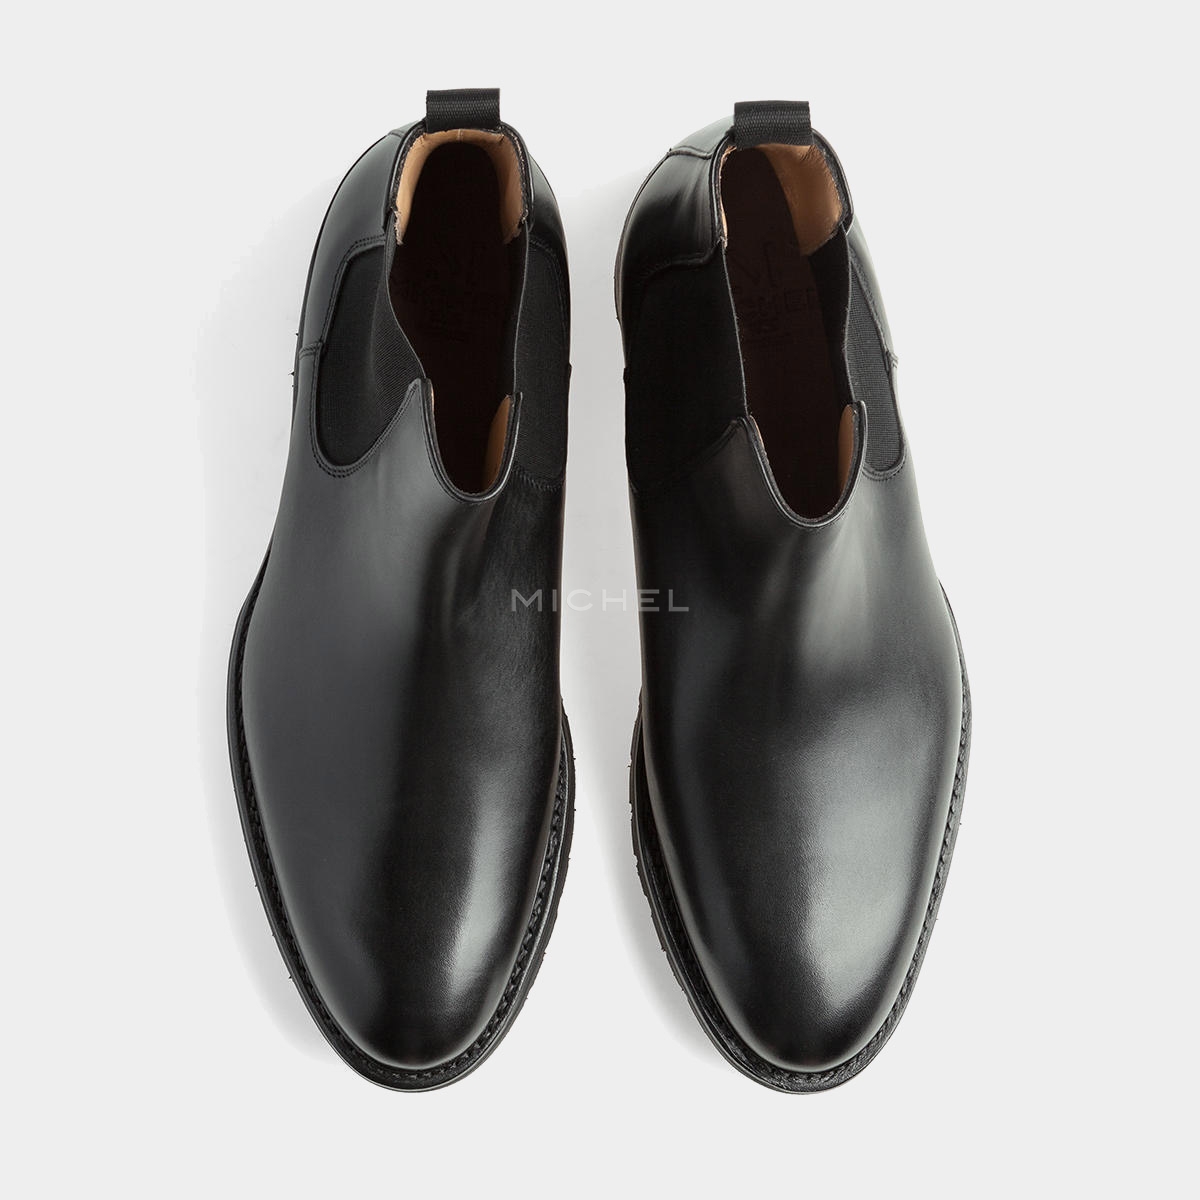 Обувь Michel 31302 Black Vibram купить в Москве и СПб